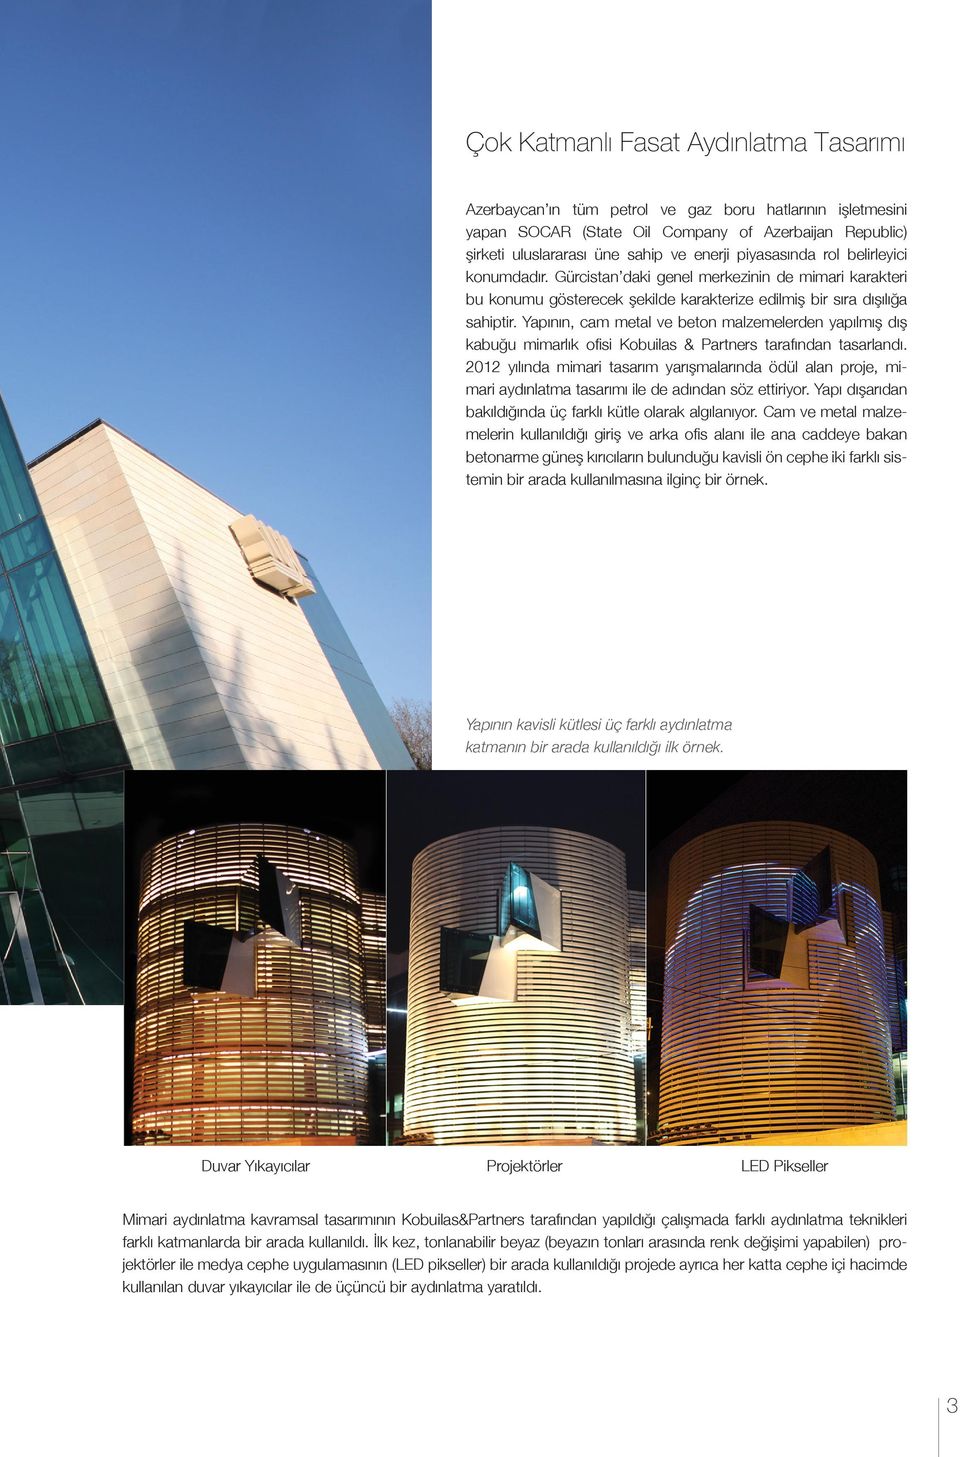 Yapının, cam metal ve beton malzemelerden yapılmış dış kabuğu mimarlık ofisi Kobuilas & Partners tarafından tasarlandı.